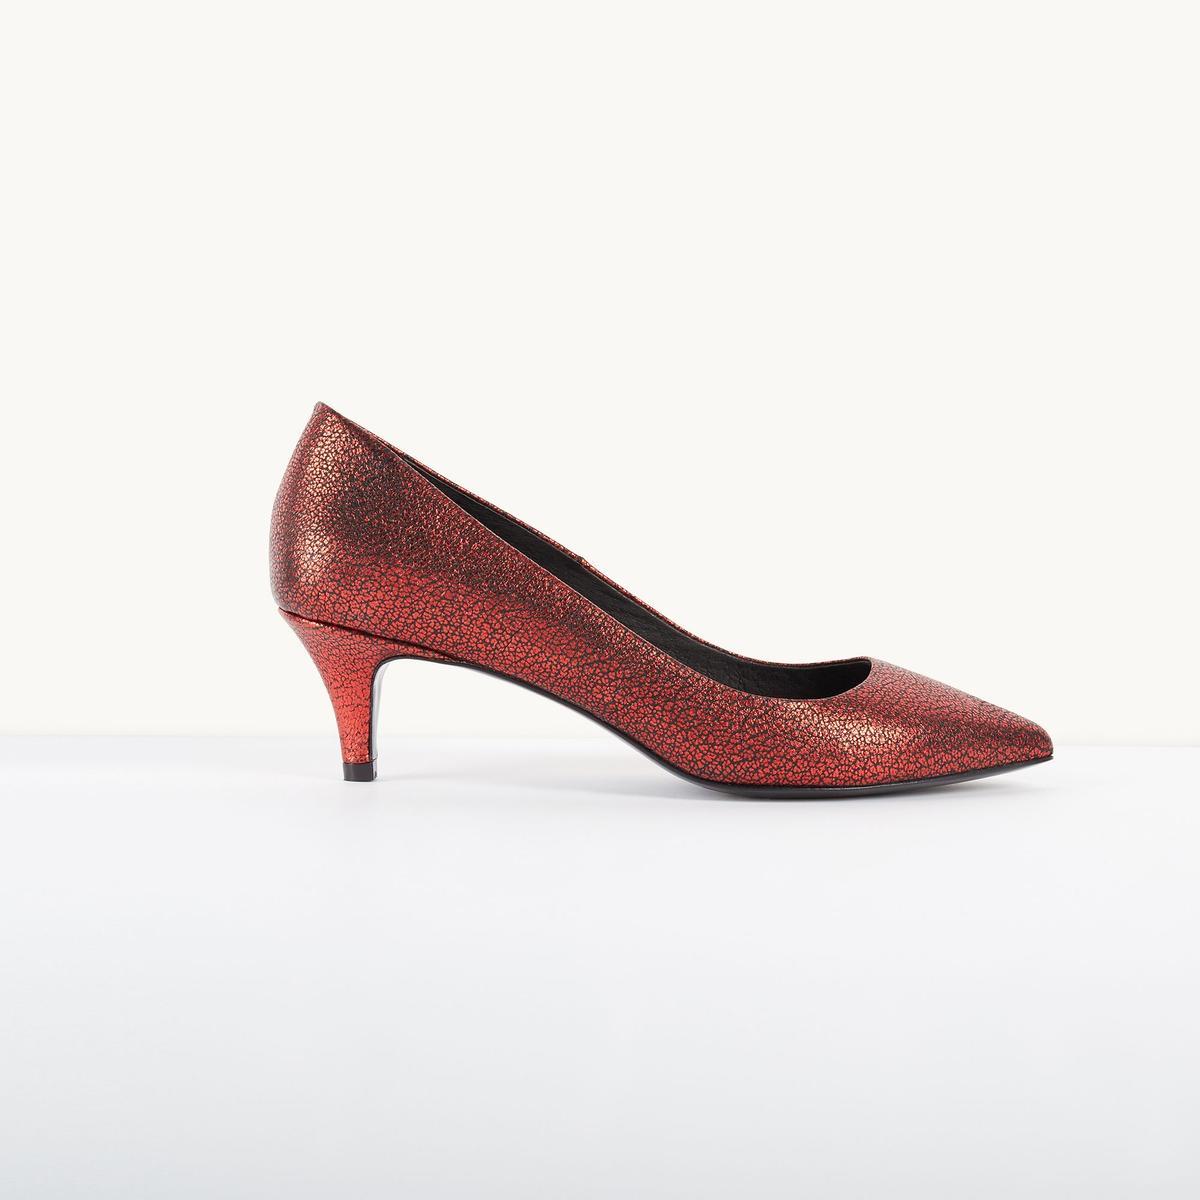 Los zapatos rojos del otoño: salón de piel con efecto agrietado